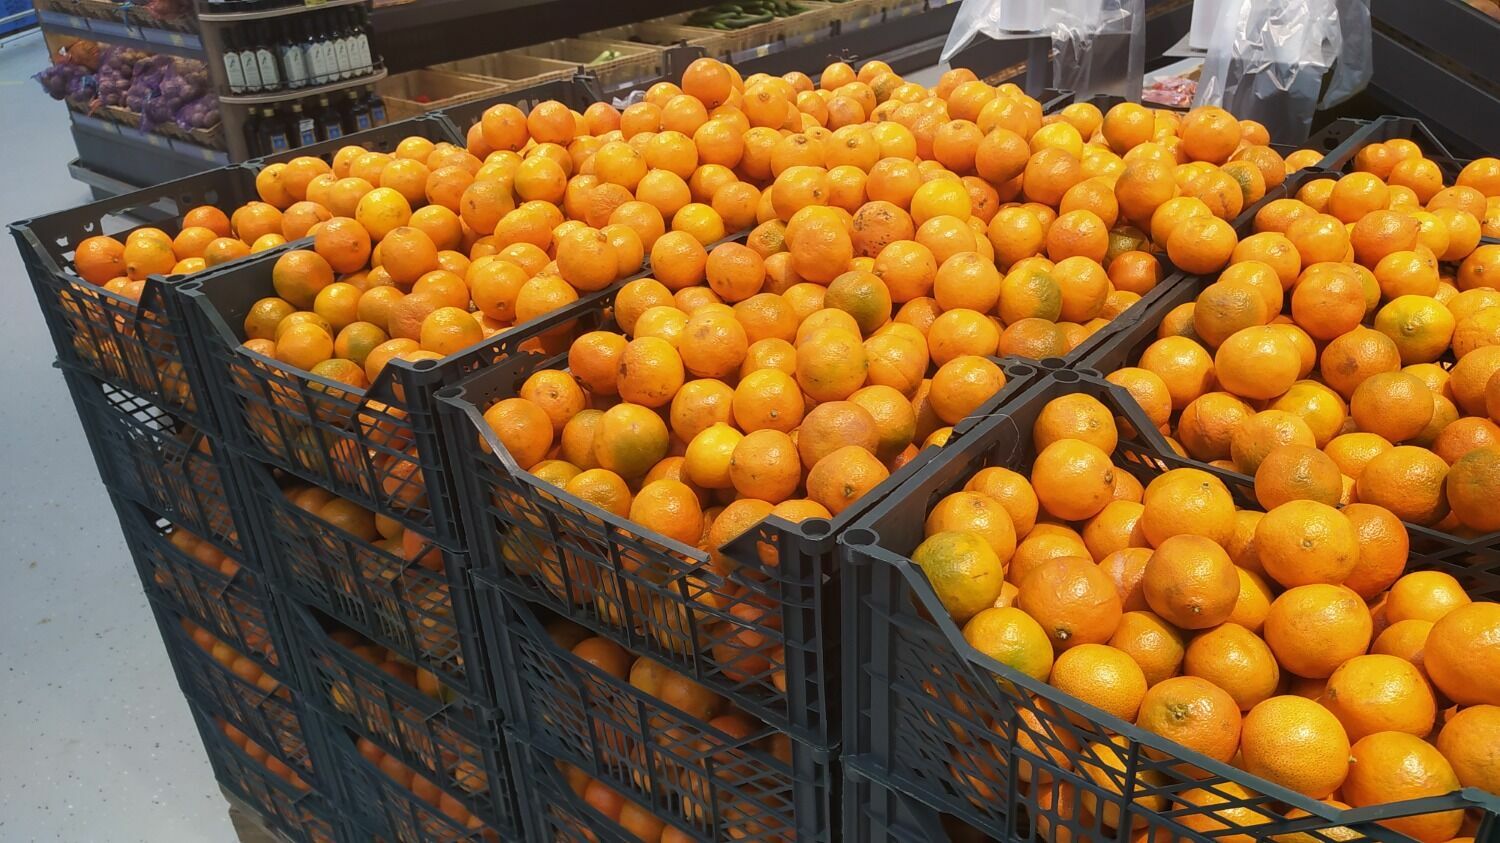 Цена «обычных» мандаринов в «Магните» держится на уровне конкурентов - 59,99 рублей за 1 кг